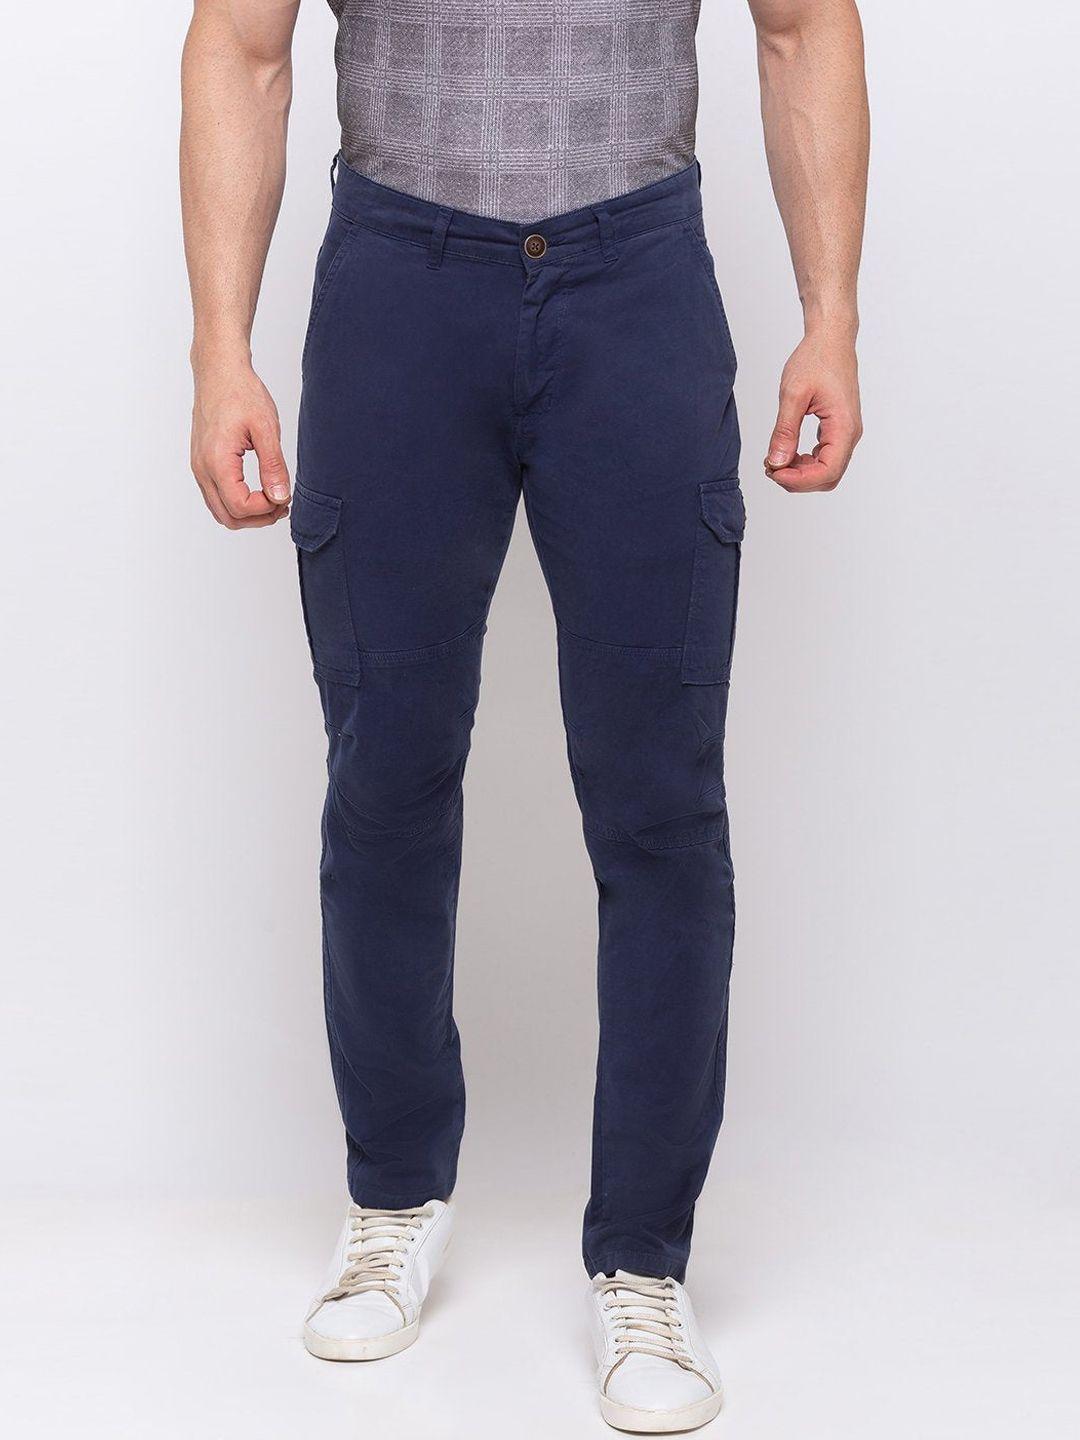 status quo men navy blue classic cargos trousers